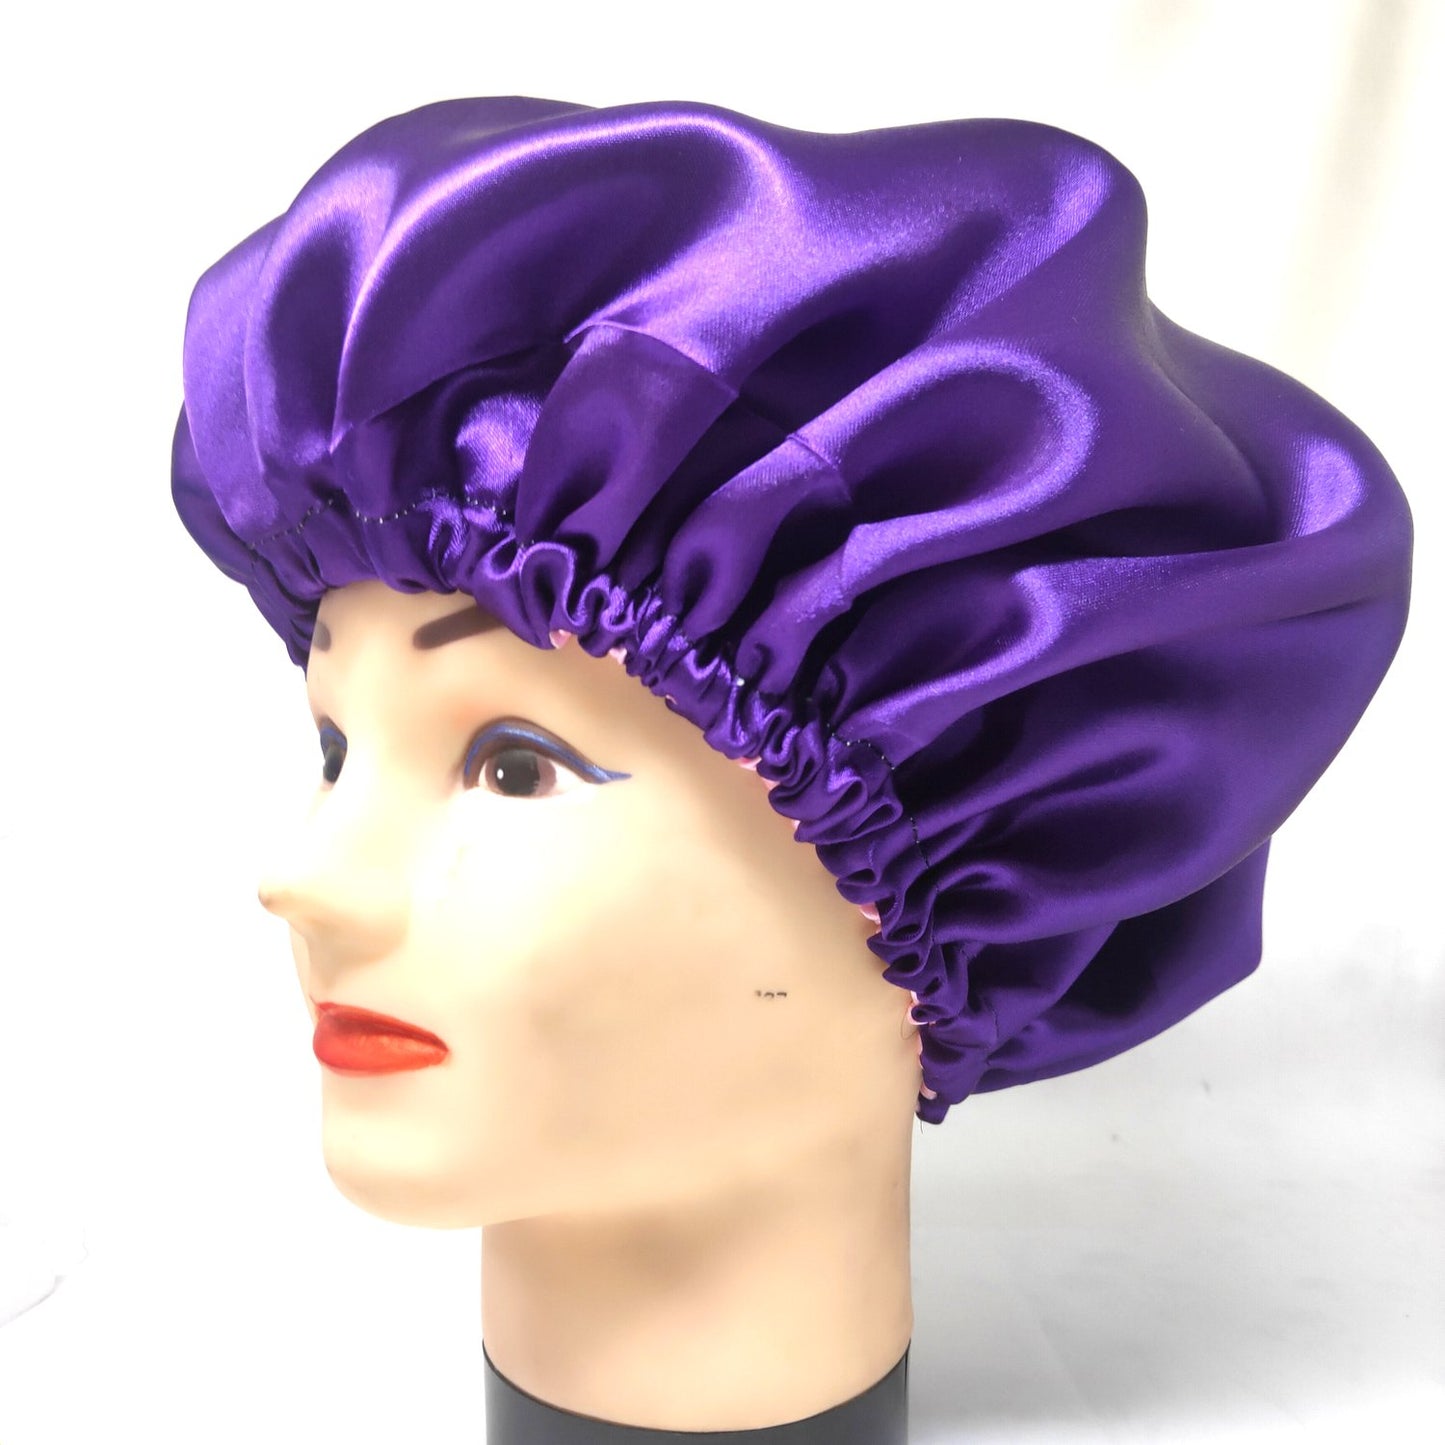 Anokhi Ada Handmade Dual Sided Satin Hair Bonnet Sleep Cap (36-06)